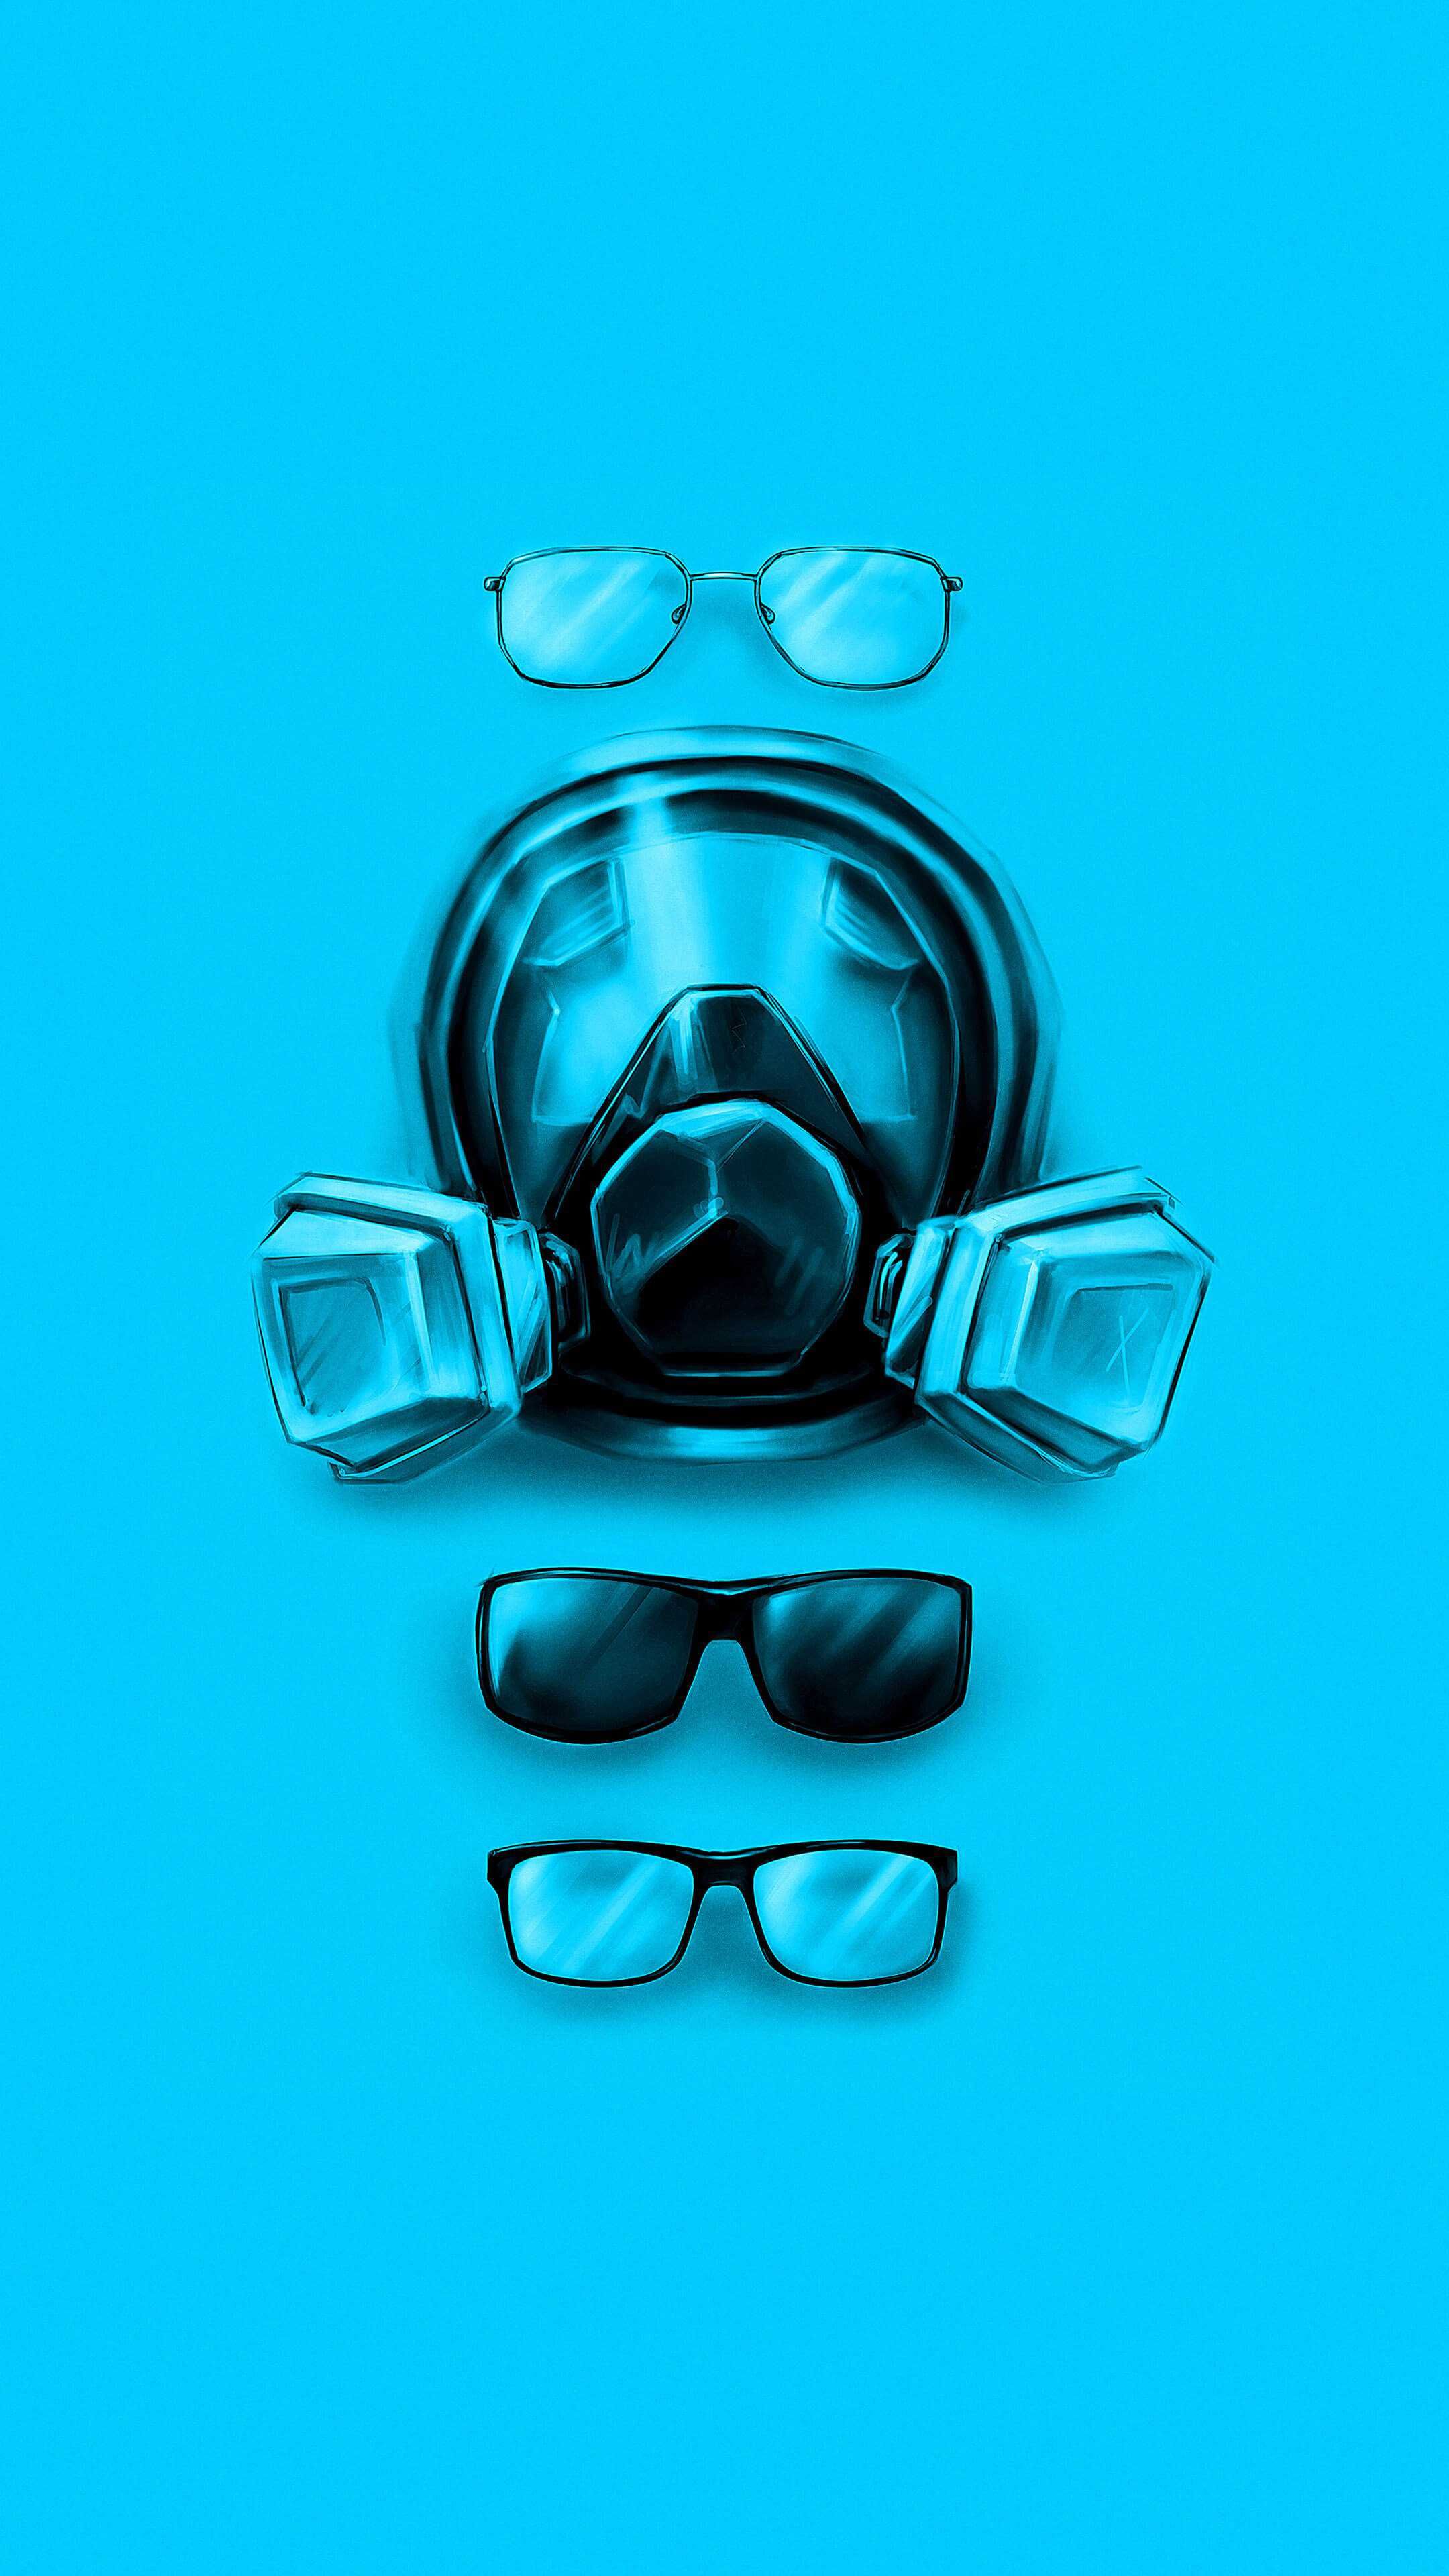 Walter White Glasses Evolution Breaking Bad iPhone Wallpaper. Breaking bad art, Breaking bad, Breaking bad poster